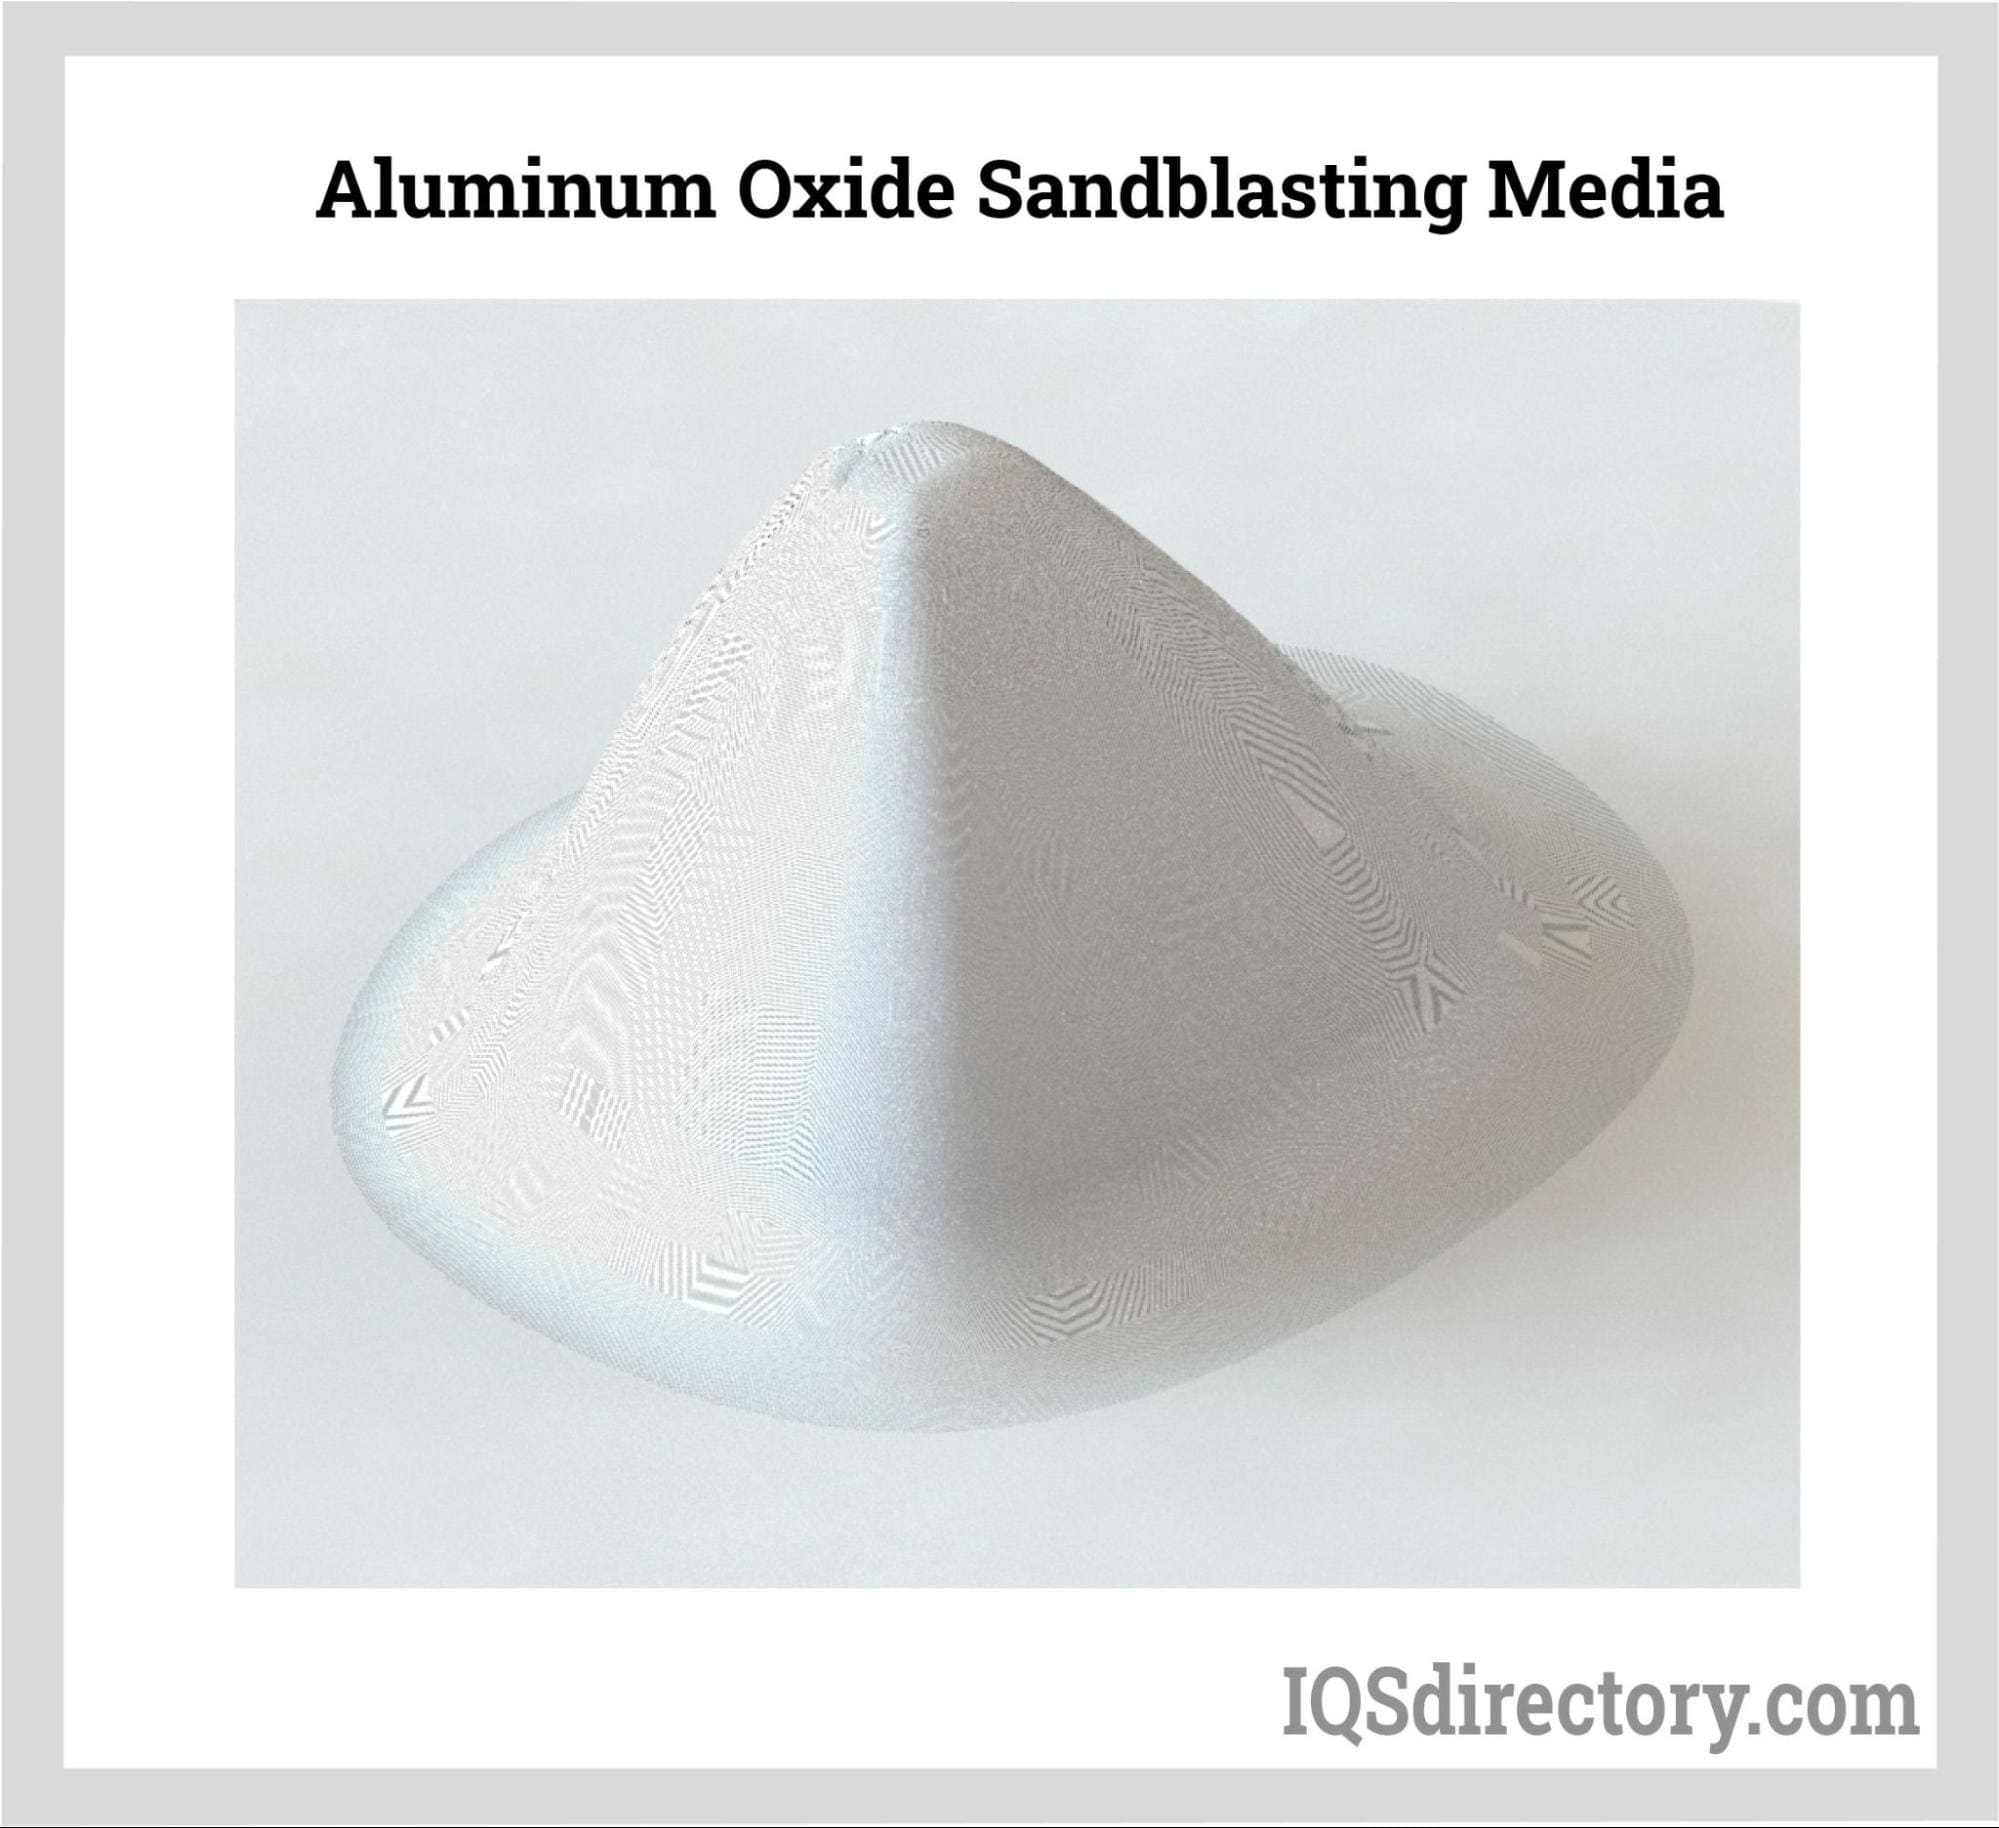 Aluminum Oxide Sandblasting Media